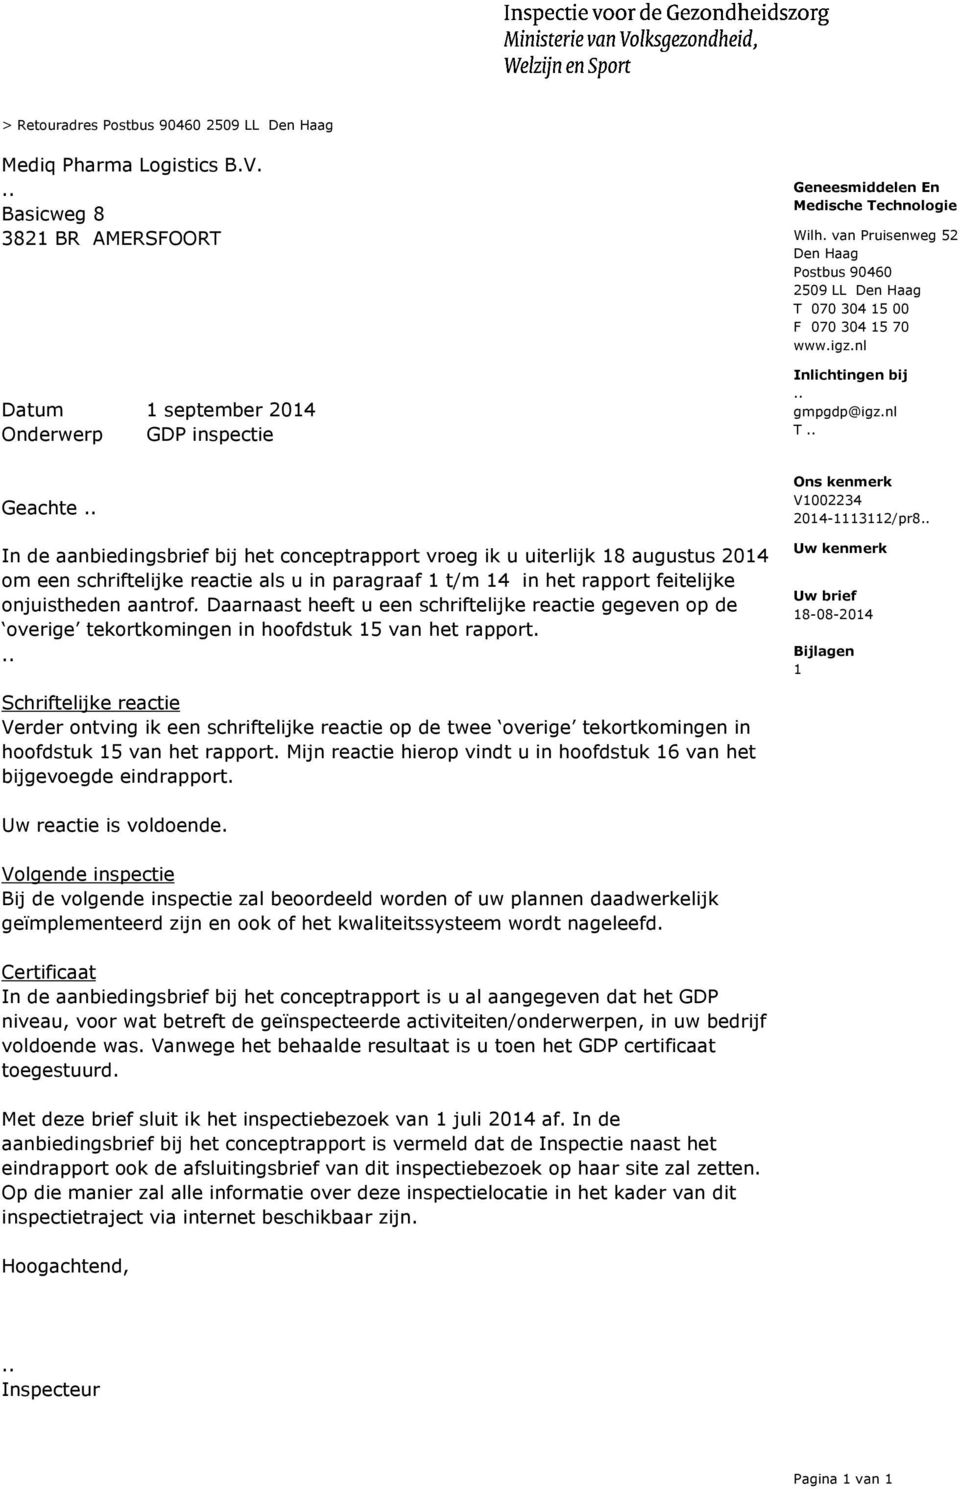 nl T Geachte In de aanbiedingsbrief bij het conceptrapport vroeg ik u uiterlijk 18 augustus 2014 om een schriftelijke reactie als u in paragraaf 1 t/m 14 in het rapport feitelijke onjuistheden